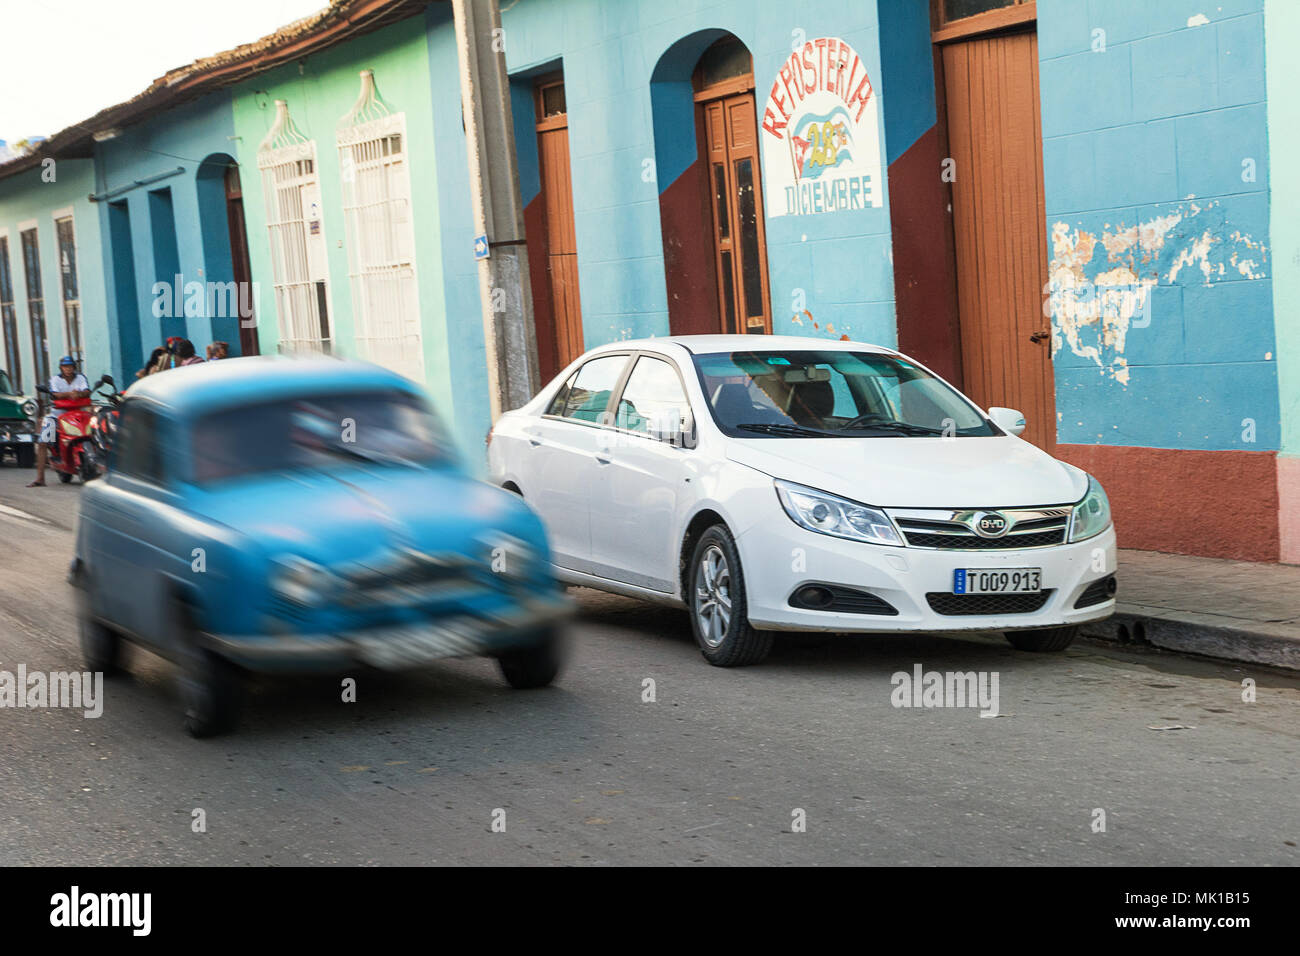 Trinidad, Cuba - 8 décembre 2017 : nouvelle voiture par rapport à une vieille voiture en mouvement et floue à Trinidad de Cuba Banque D'Images